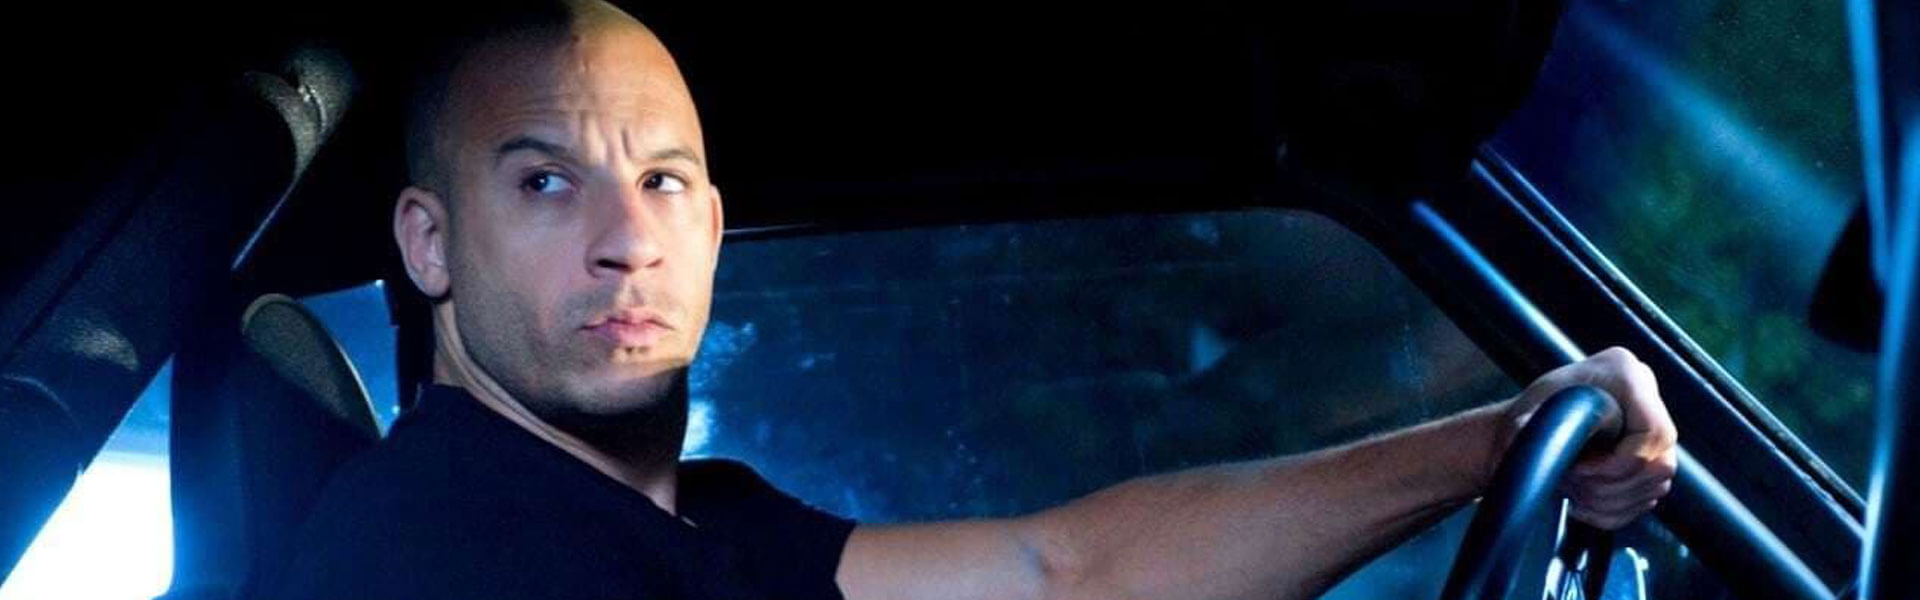 Conoce a Vin Diesel, la estrella de 'Rápidos y furiosos'